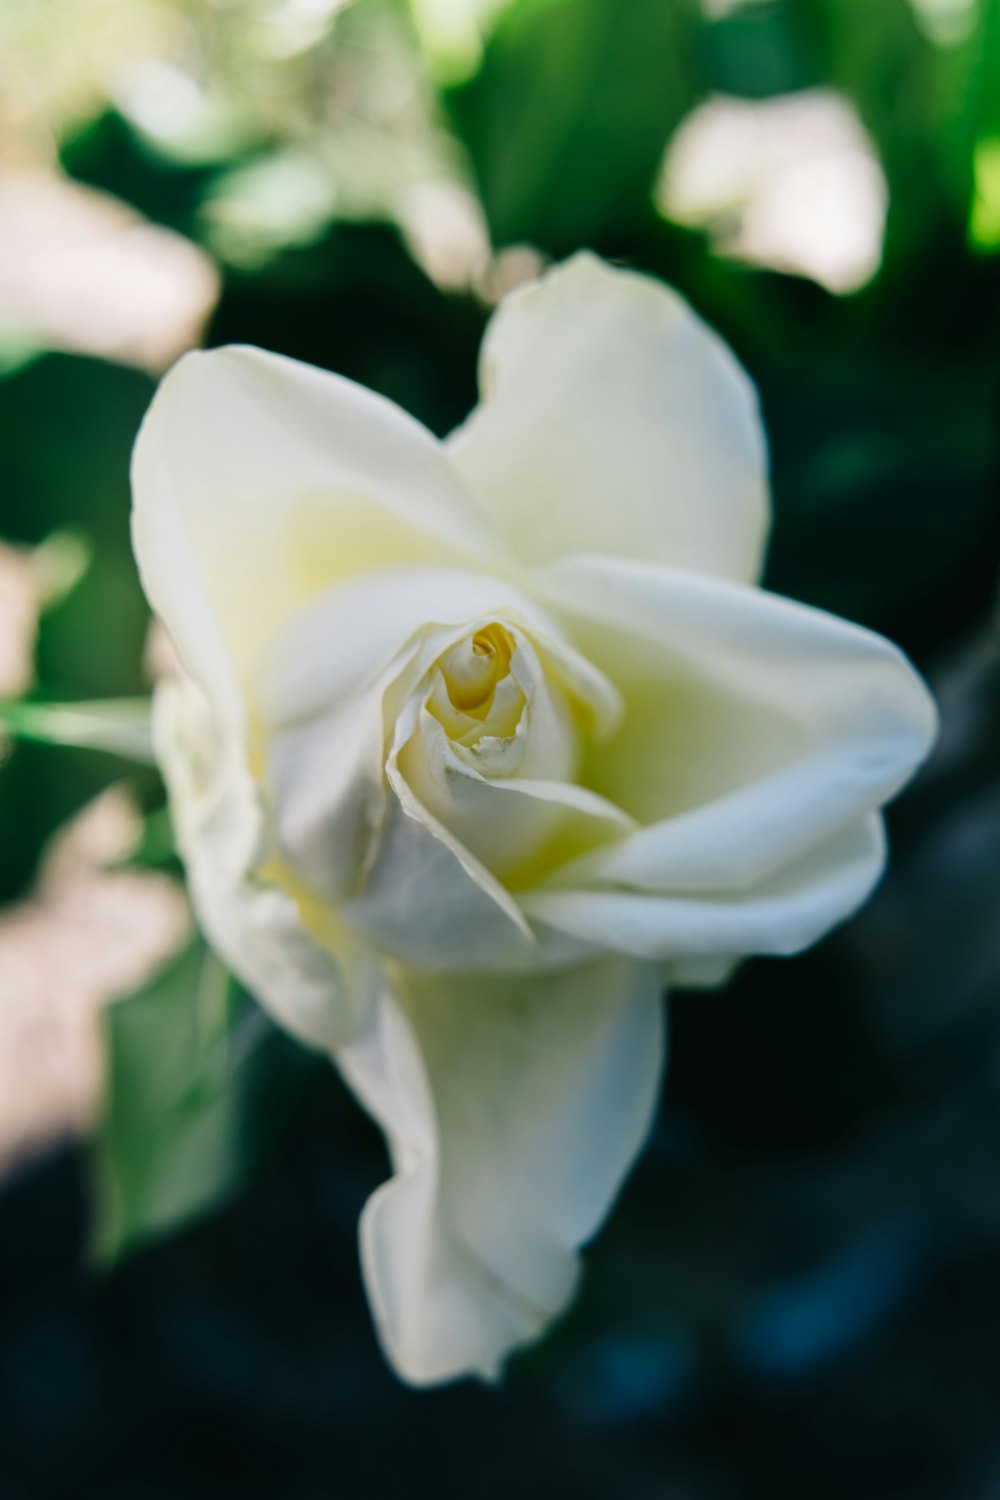 rosa blanca en flor durante el día